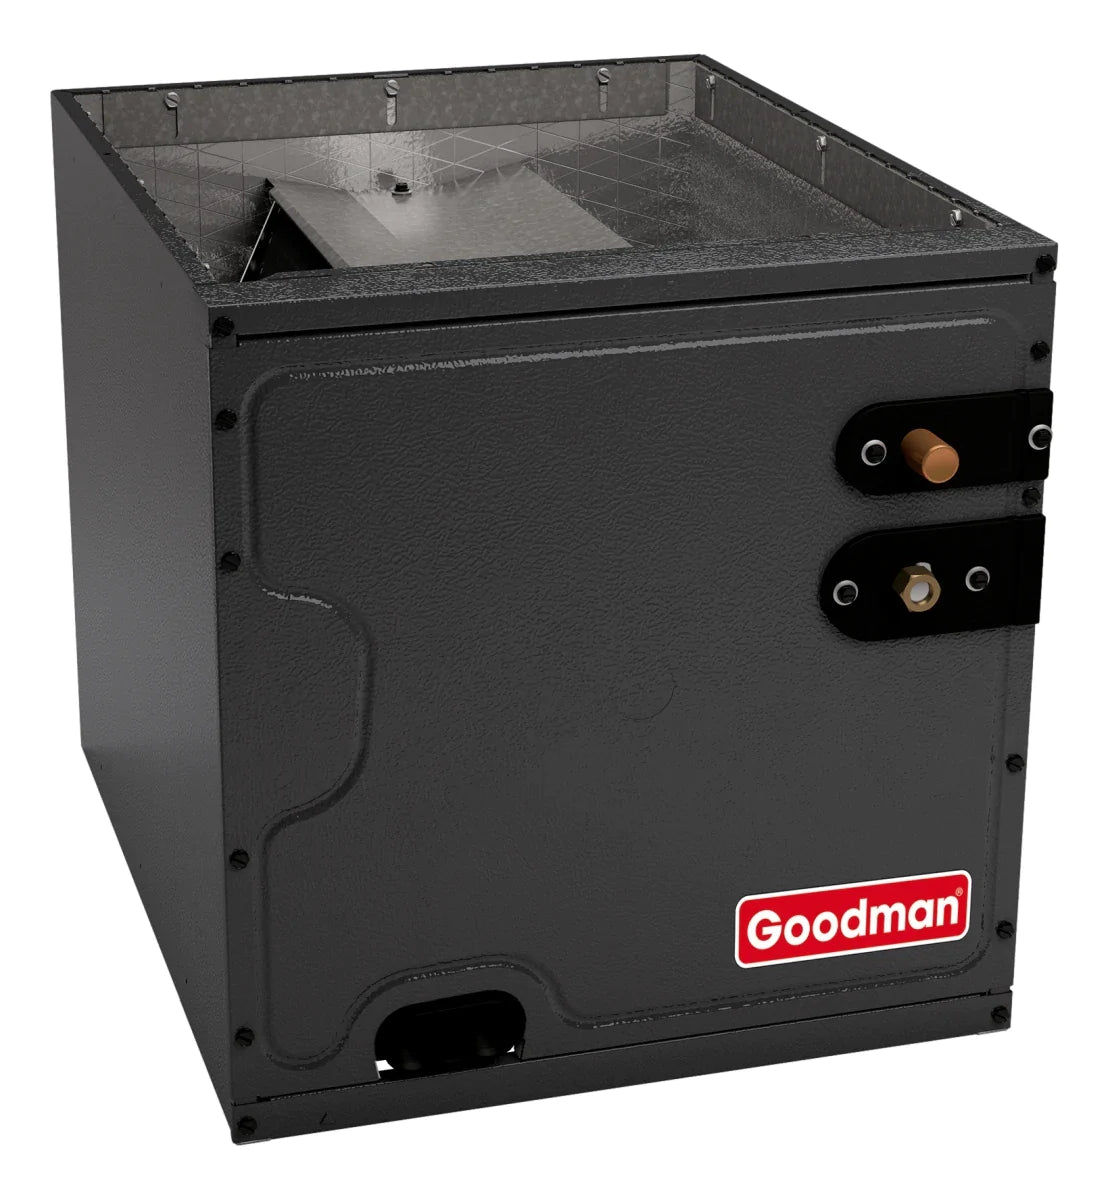 Goodman 2.5 TON 15 SEER2 Upflow AC system with 80% AFUE 60k BTU 2 stage Low NOx Furnace (GSXM403010, CAPTA3626B4, GMVC800603BX)